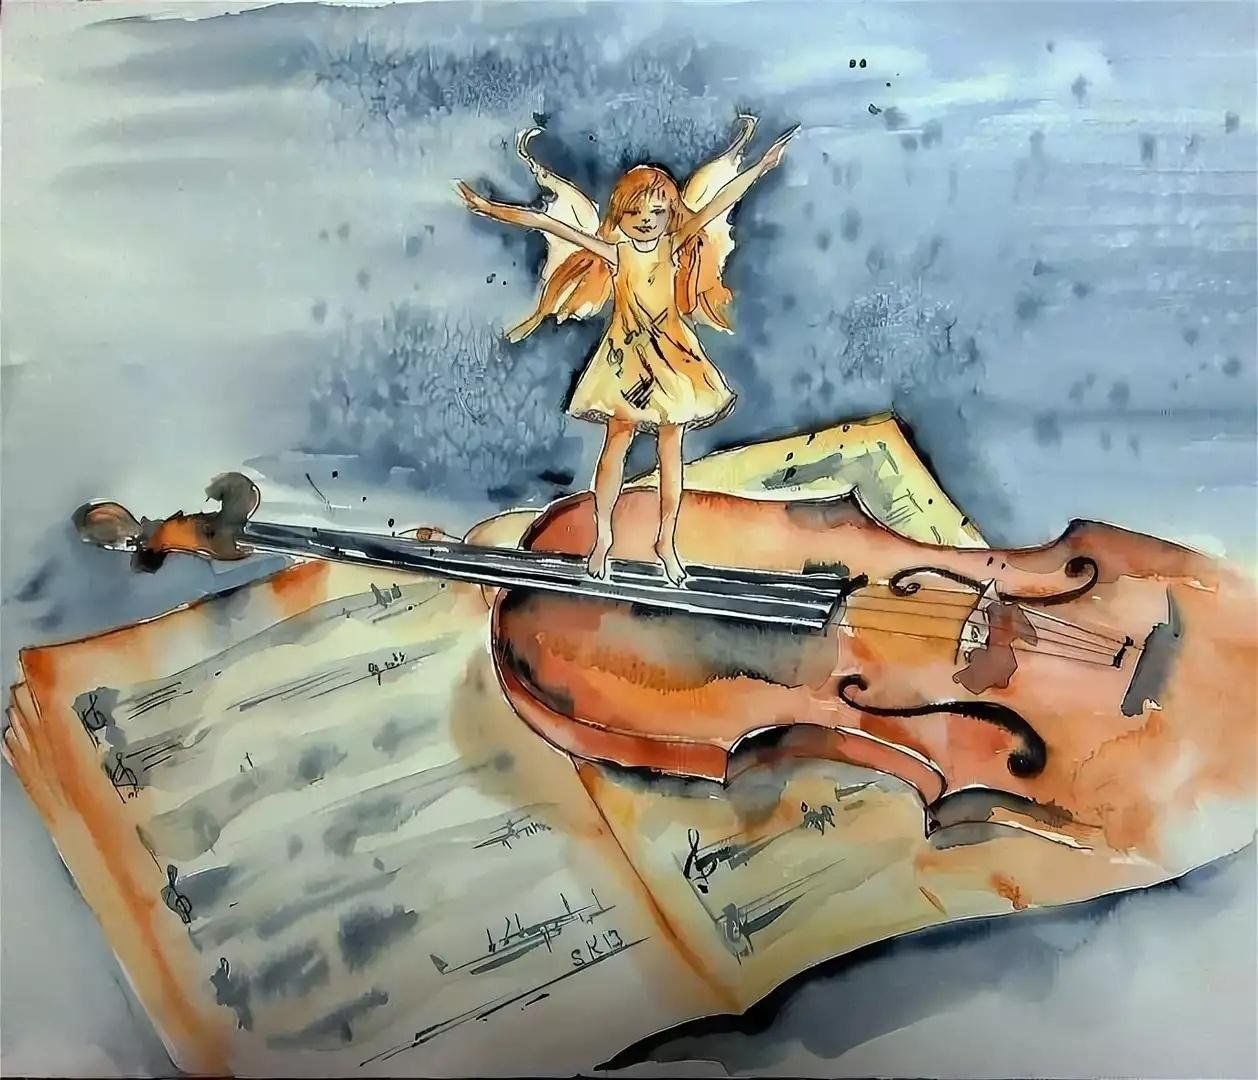 Глазунов скрипка